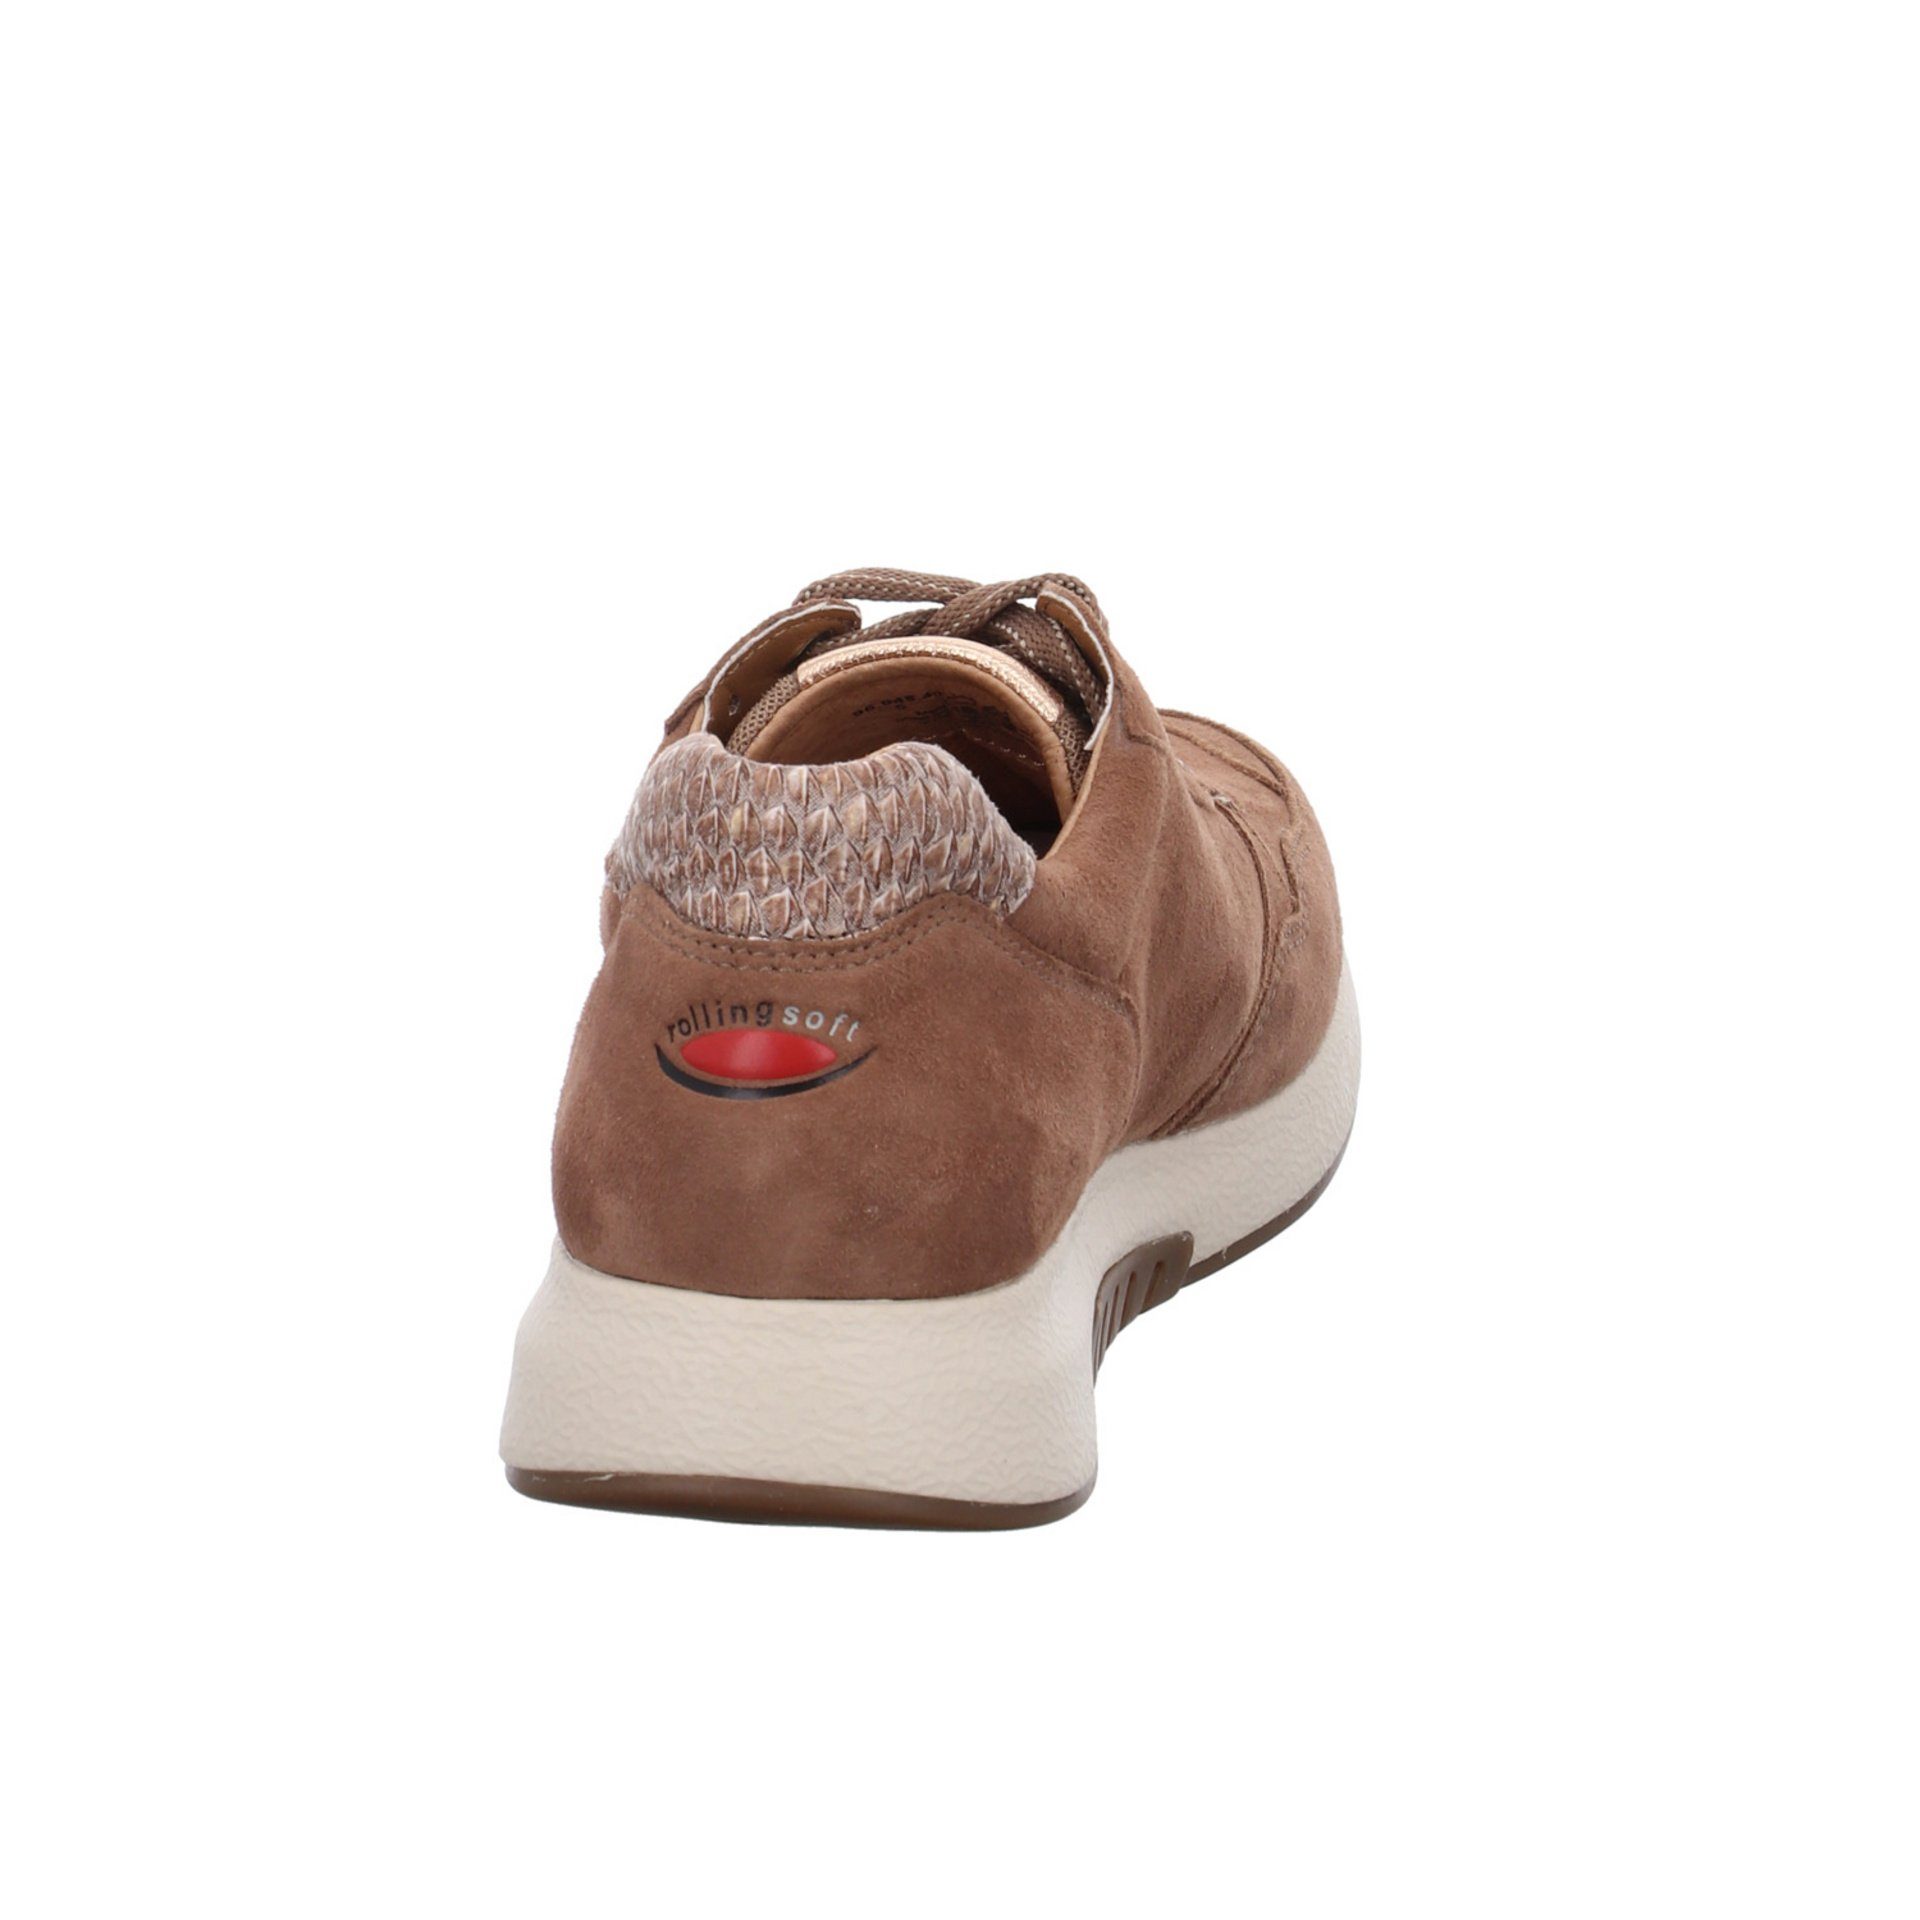 Gabor Sneaker (muskat/rame) Braun Rollingsoft Schnürschuh Damen Sneaker Textil Schuhe